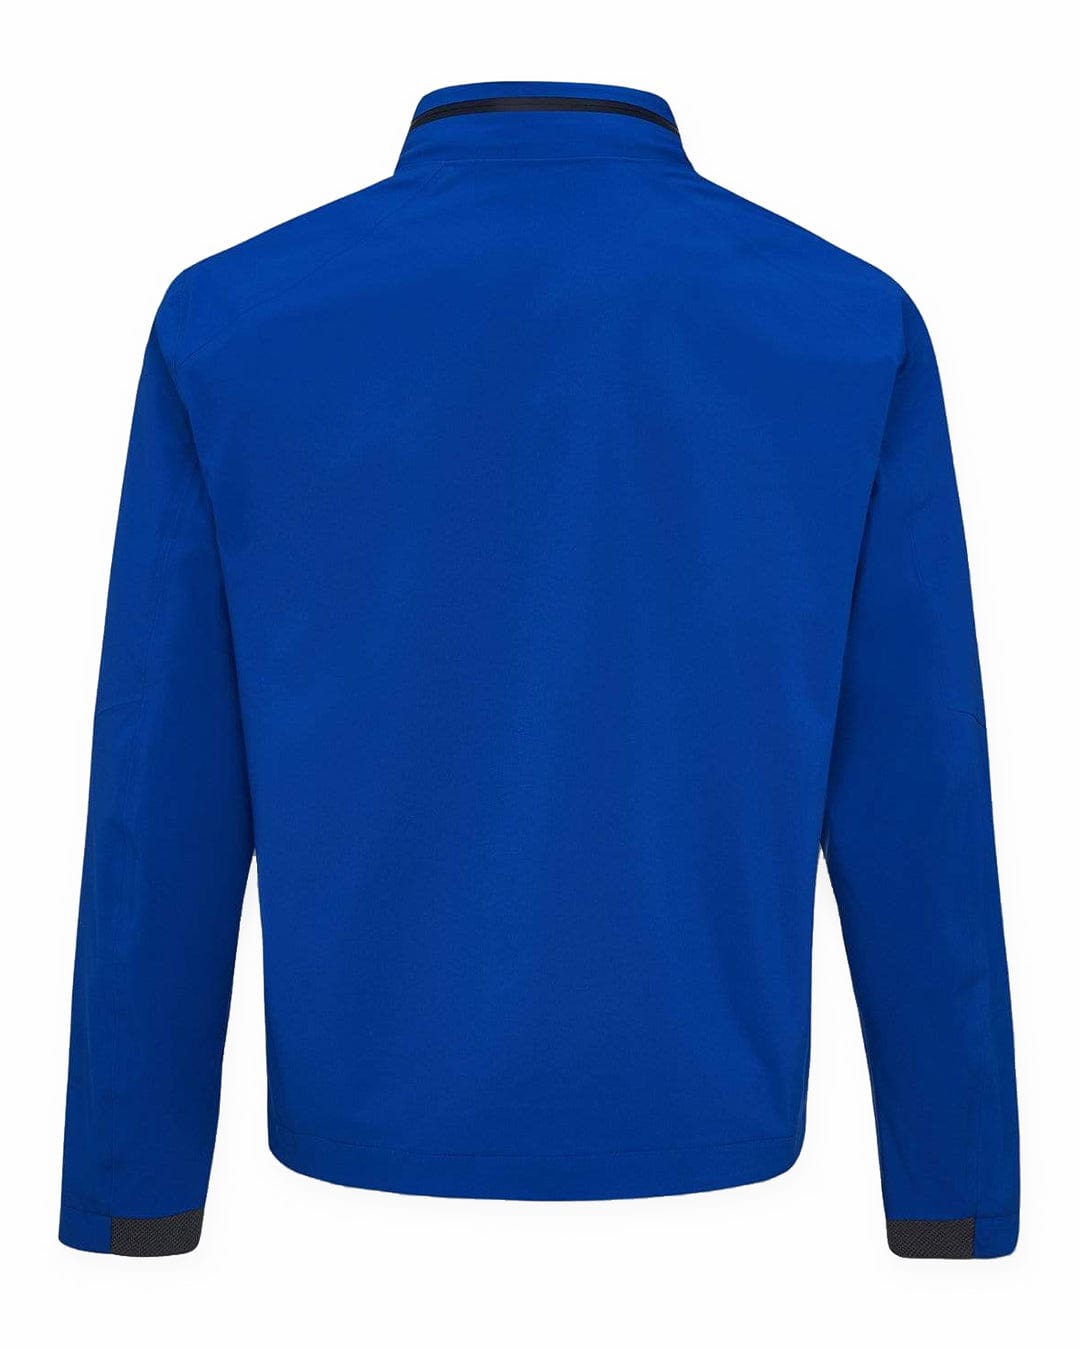 Hackett Outerwear Hackett Electric Blue Soft Jacket